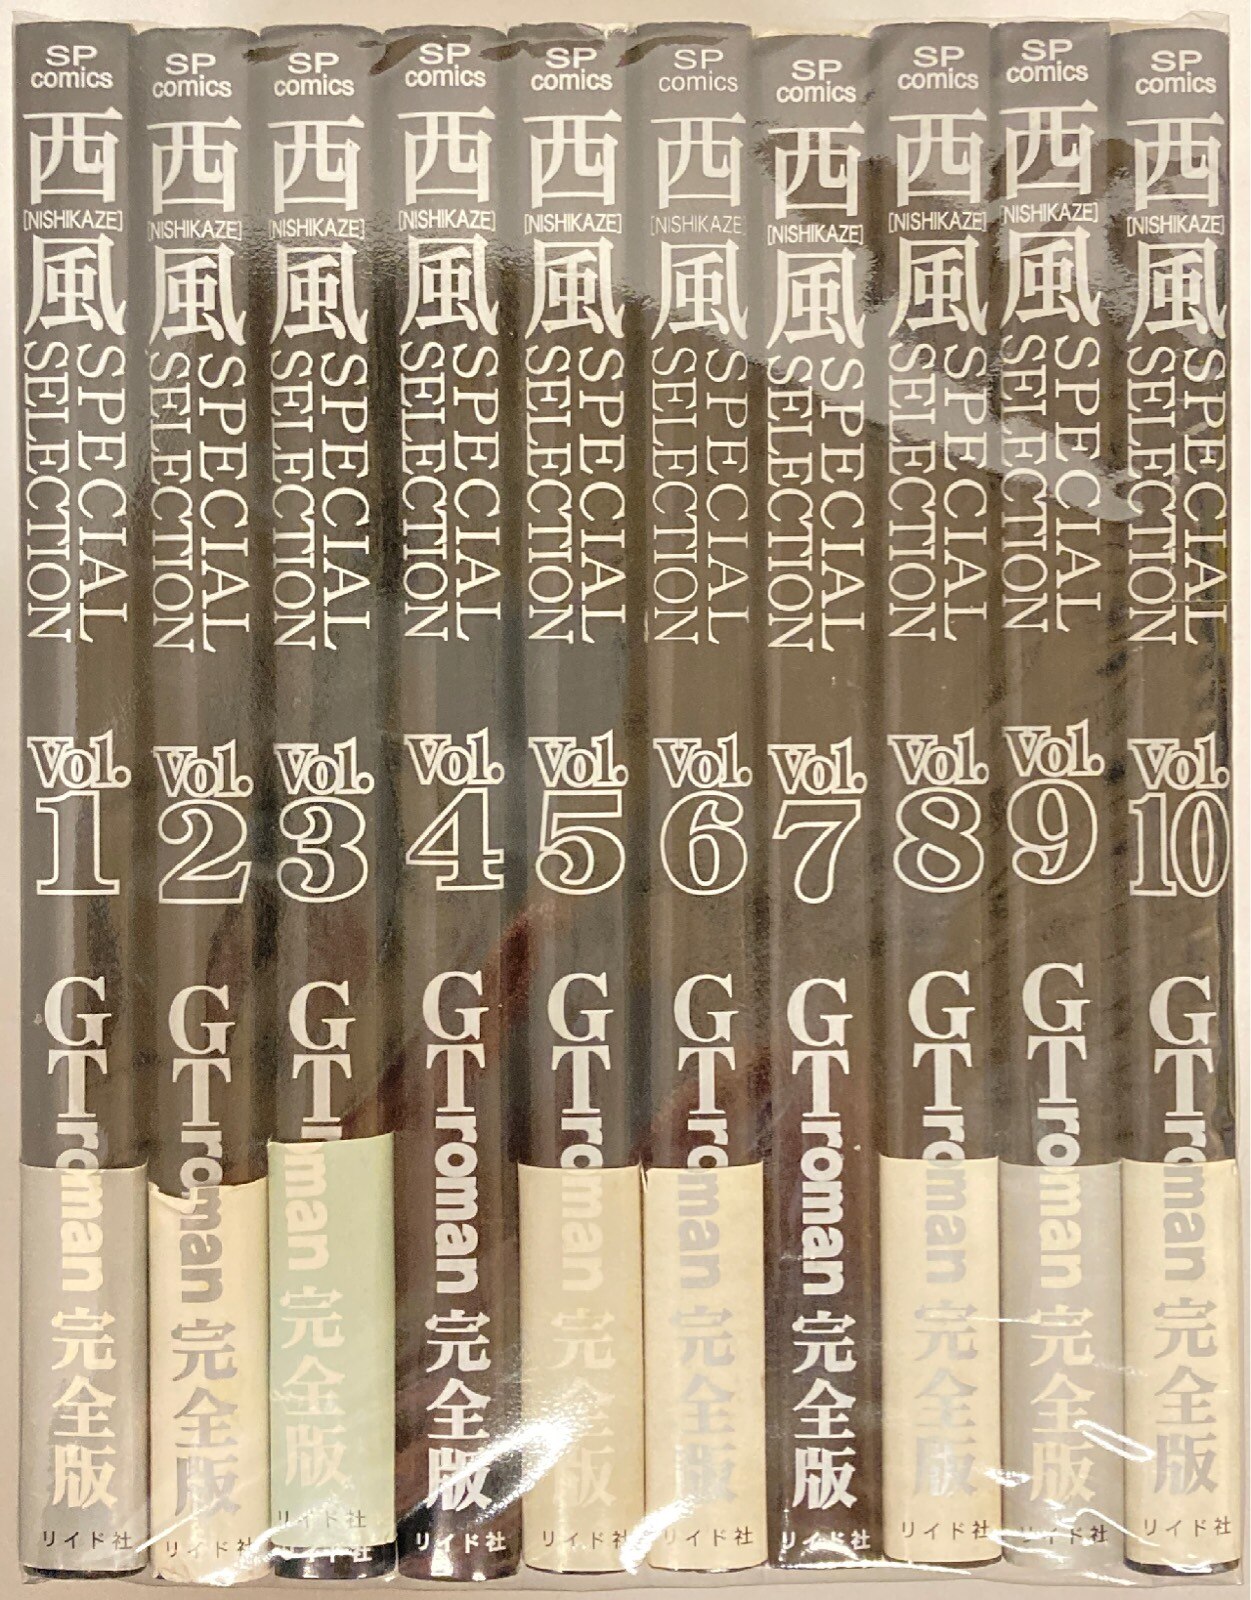 リイド社 SPコミックス 西風 !!)西風SPECIAL SELECTION GT roman 完全 ...